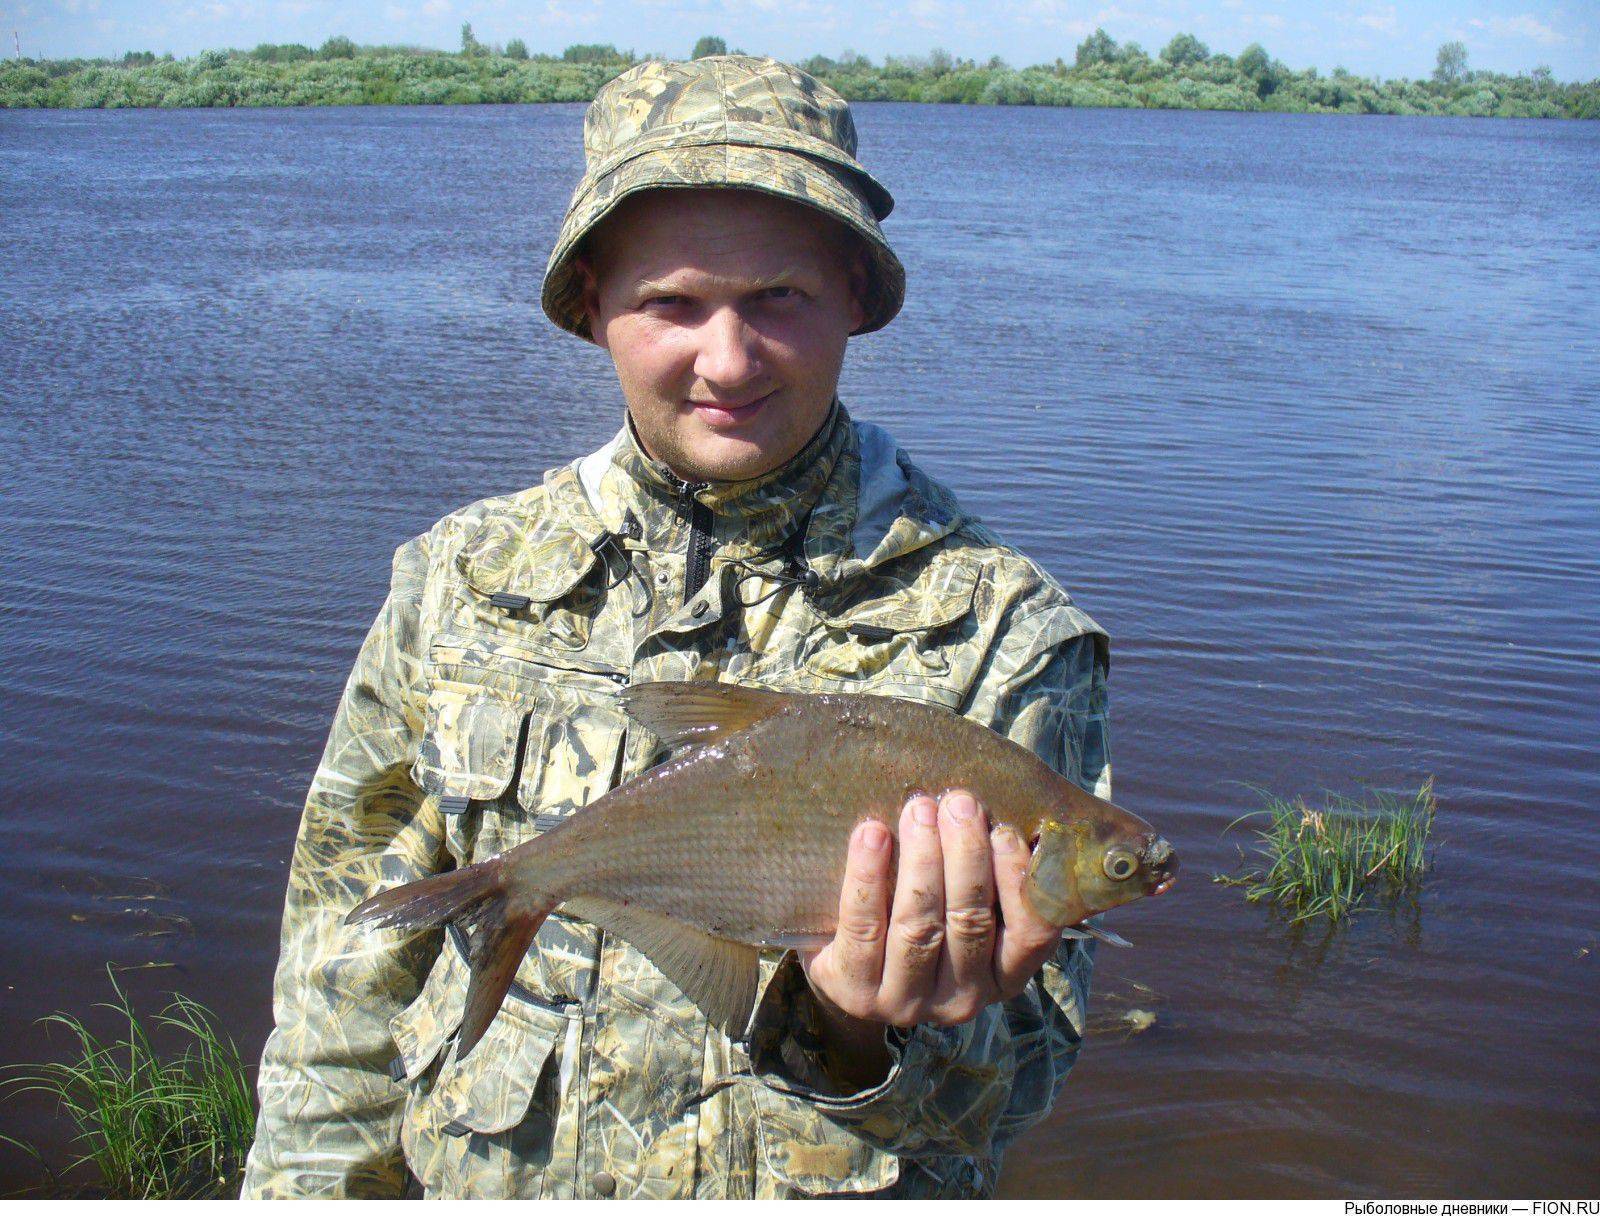 Рыбалка в тюменской области и тюмени: известные реки региона, популярные озёра, платные места вылова рыбы